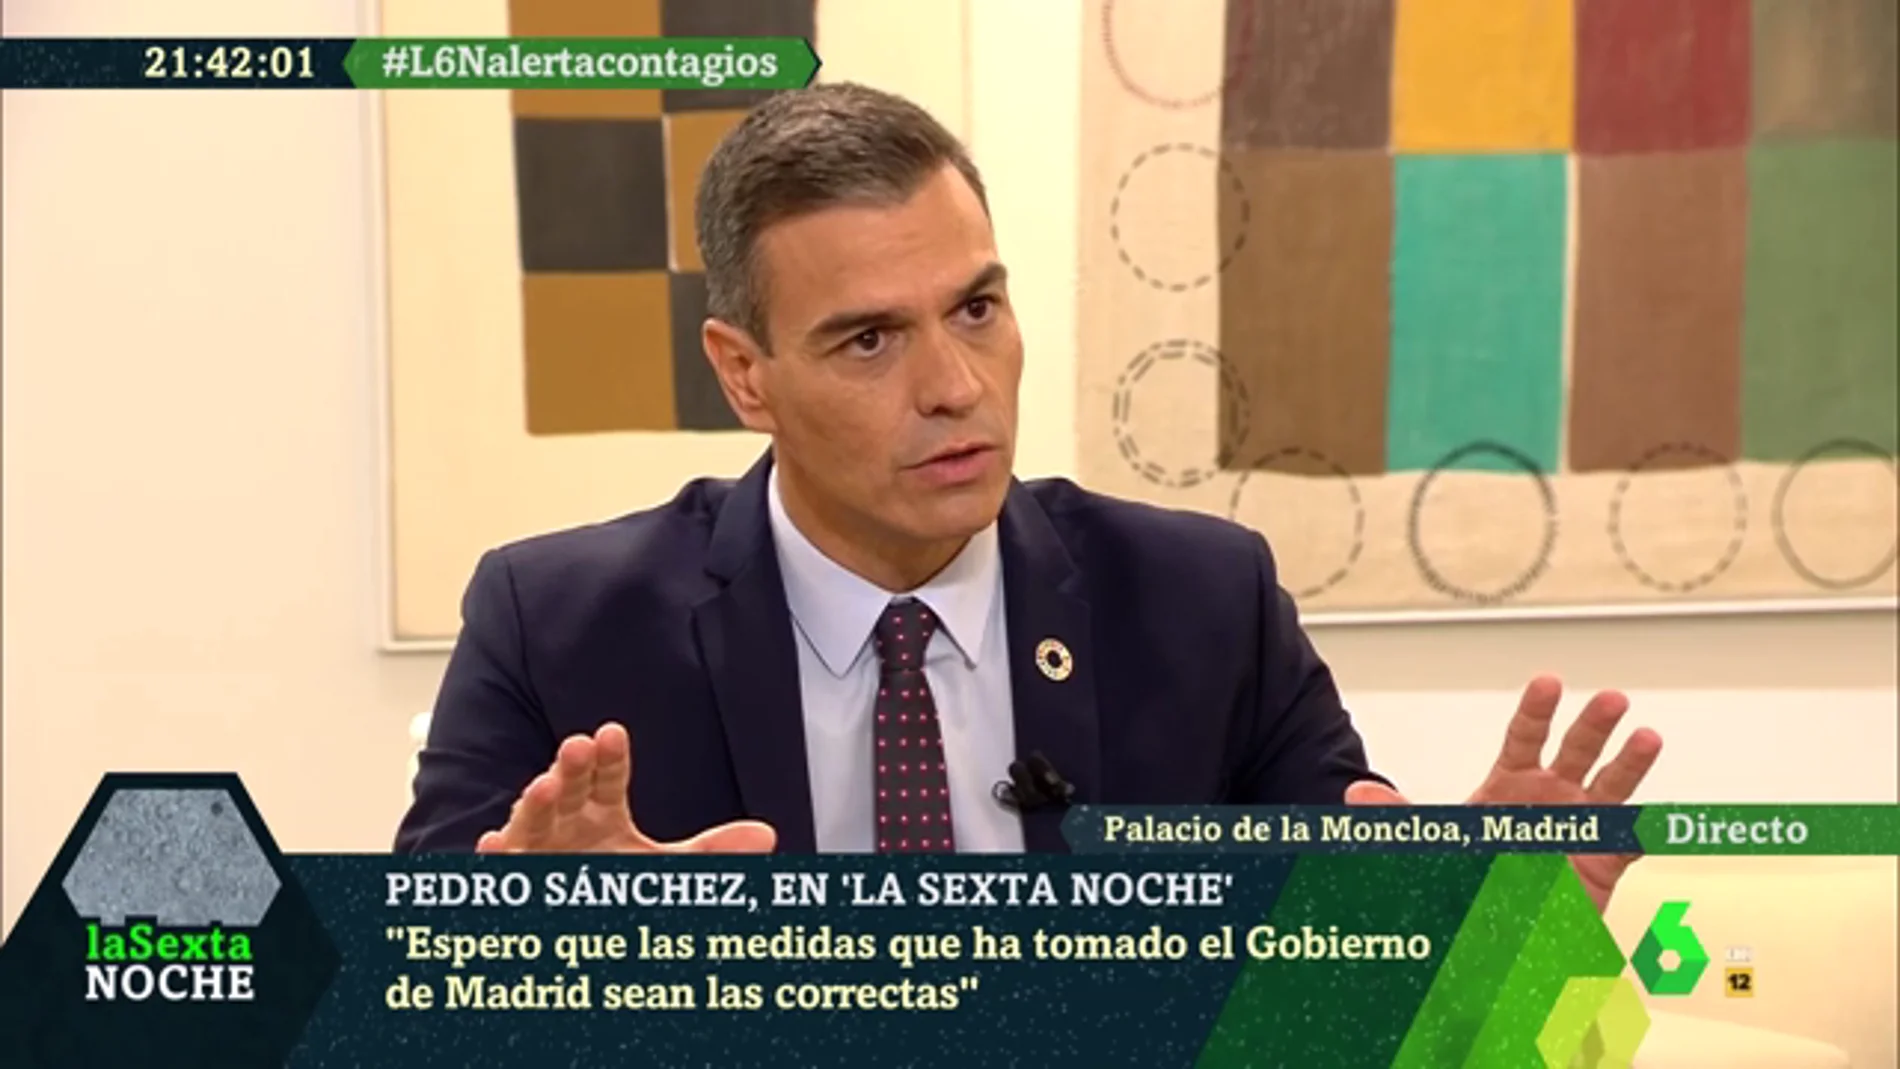 El mensaje de Sánchez a Díaz Ayuso: "No voy a tutelar ni a sustituir, voy a colaborar para doblegar la curva en Madrid"